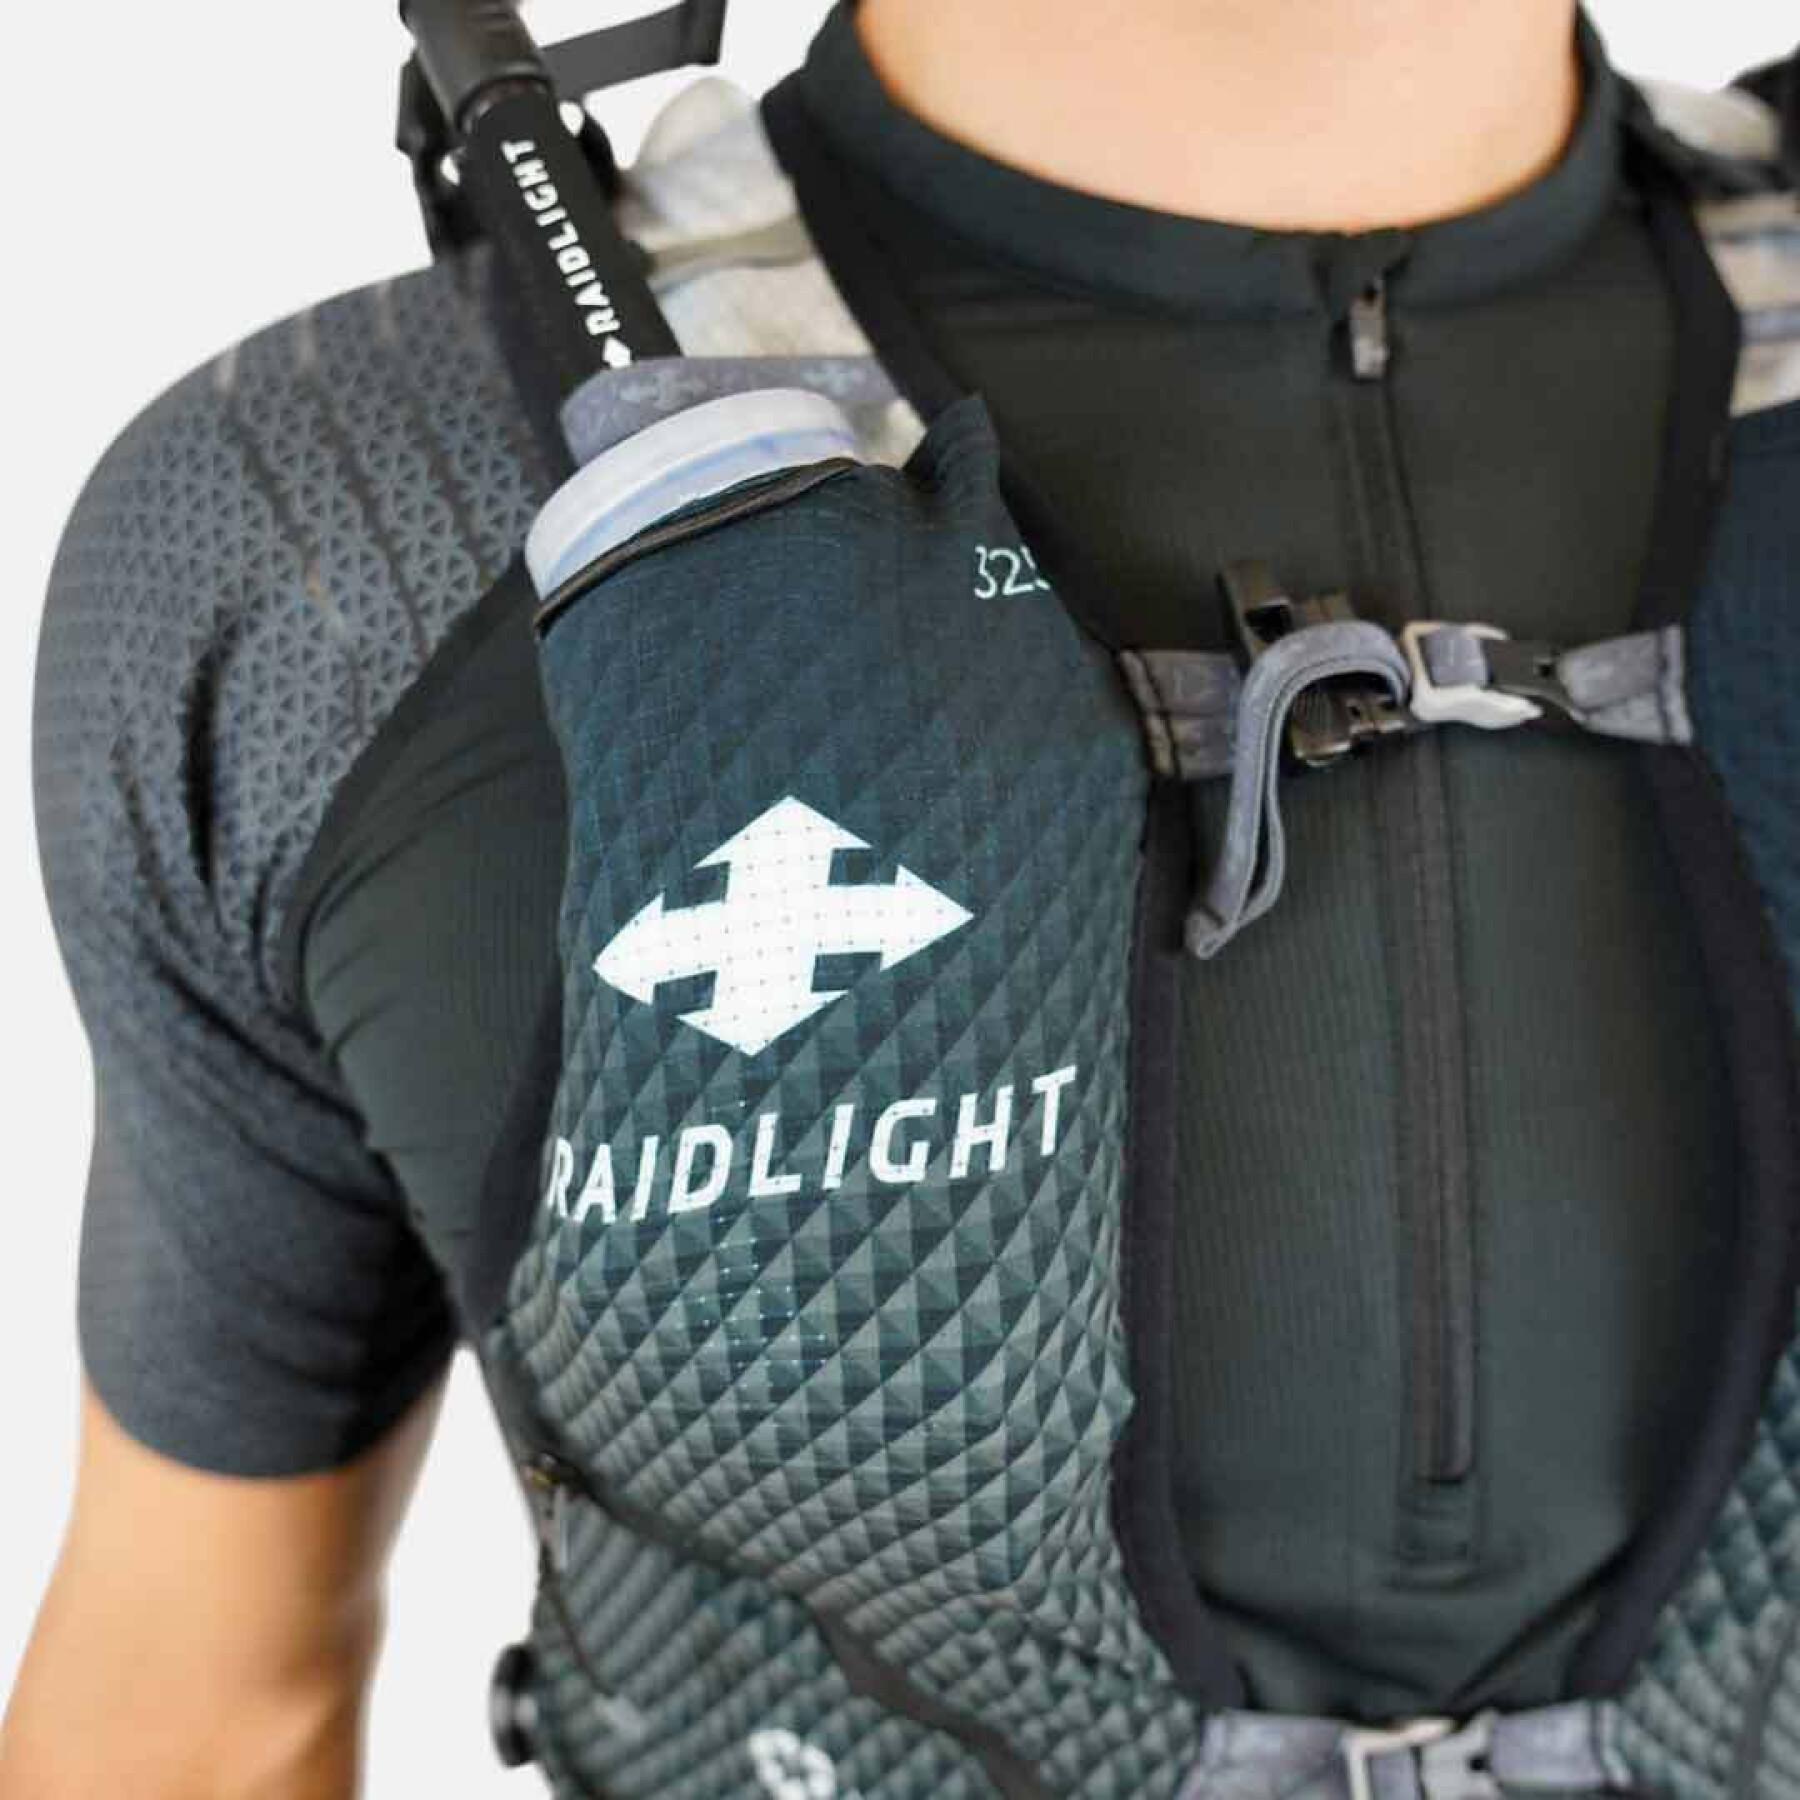 Plecak RaidLight Ultralight 24 L